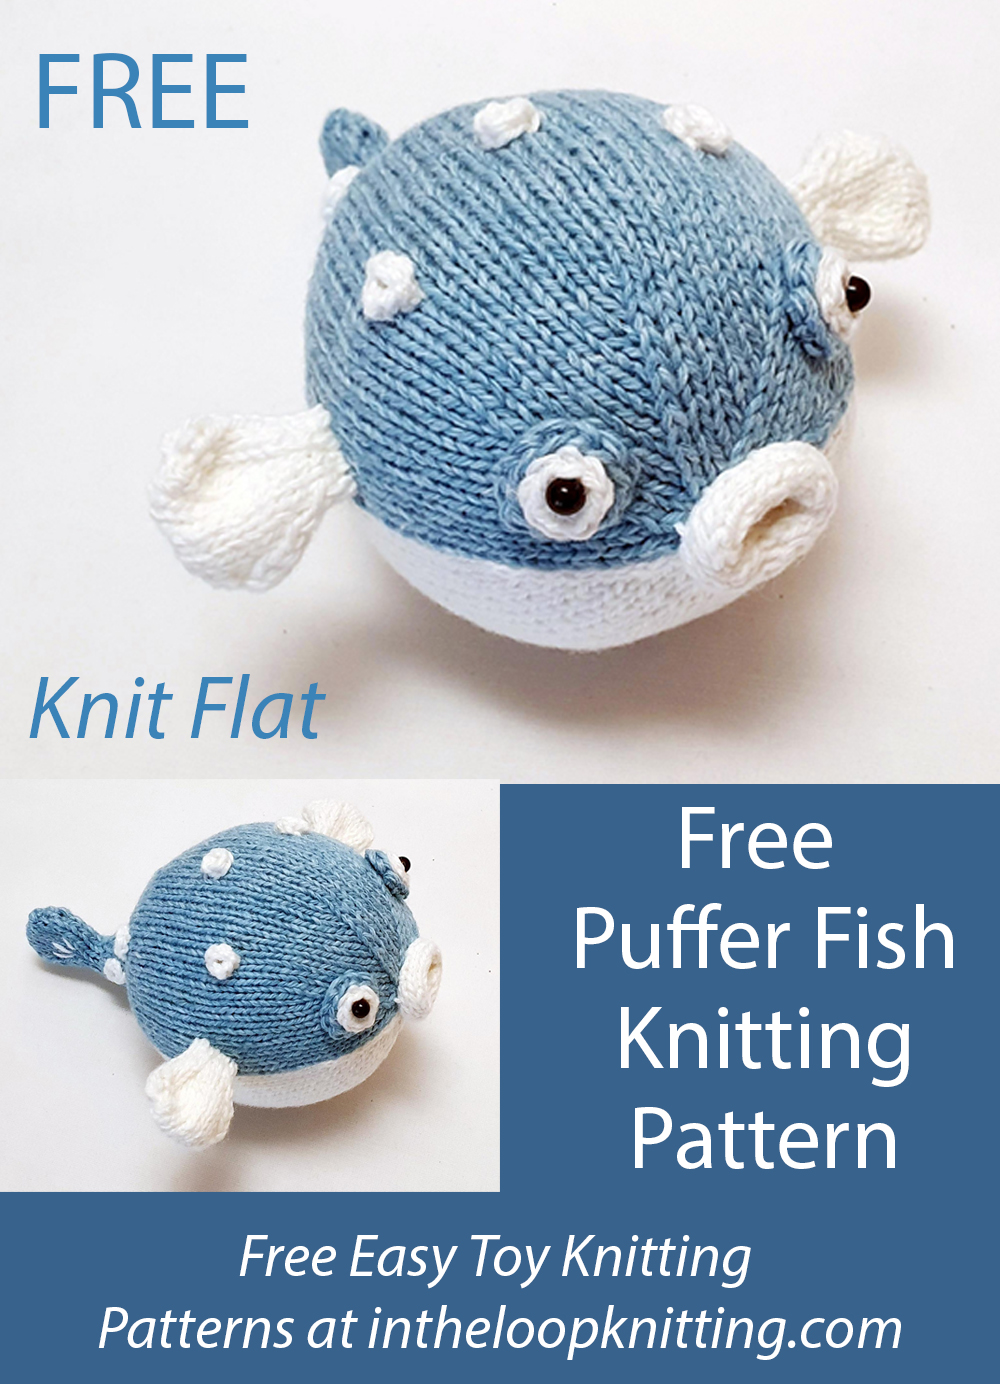 Free Puffer Fish Knitting Pattern